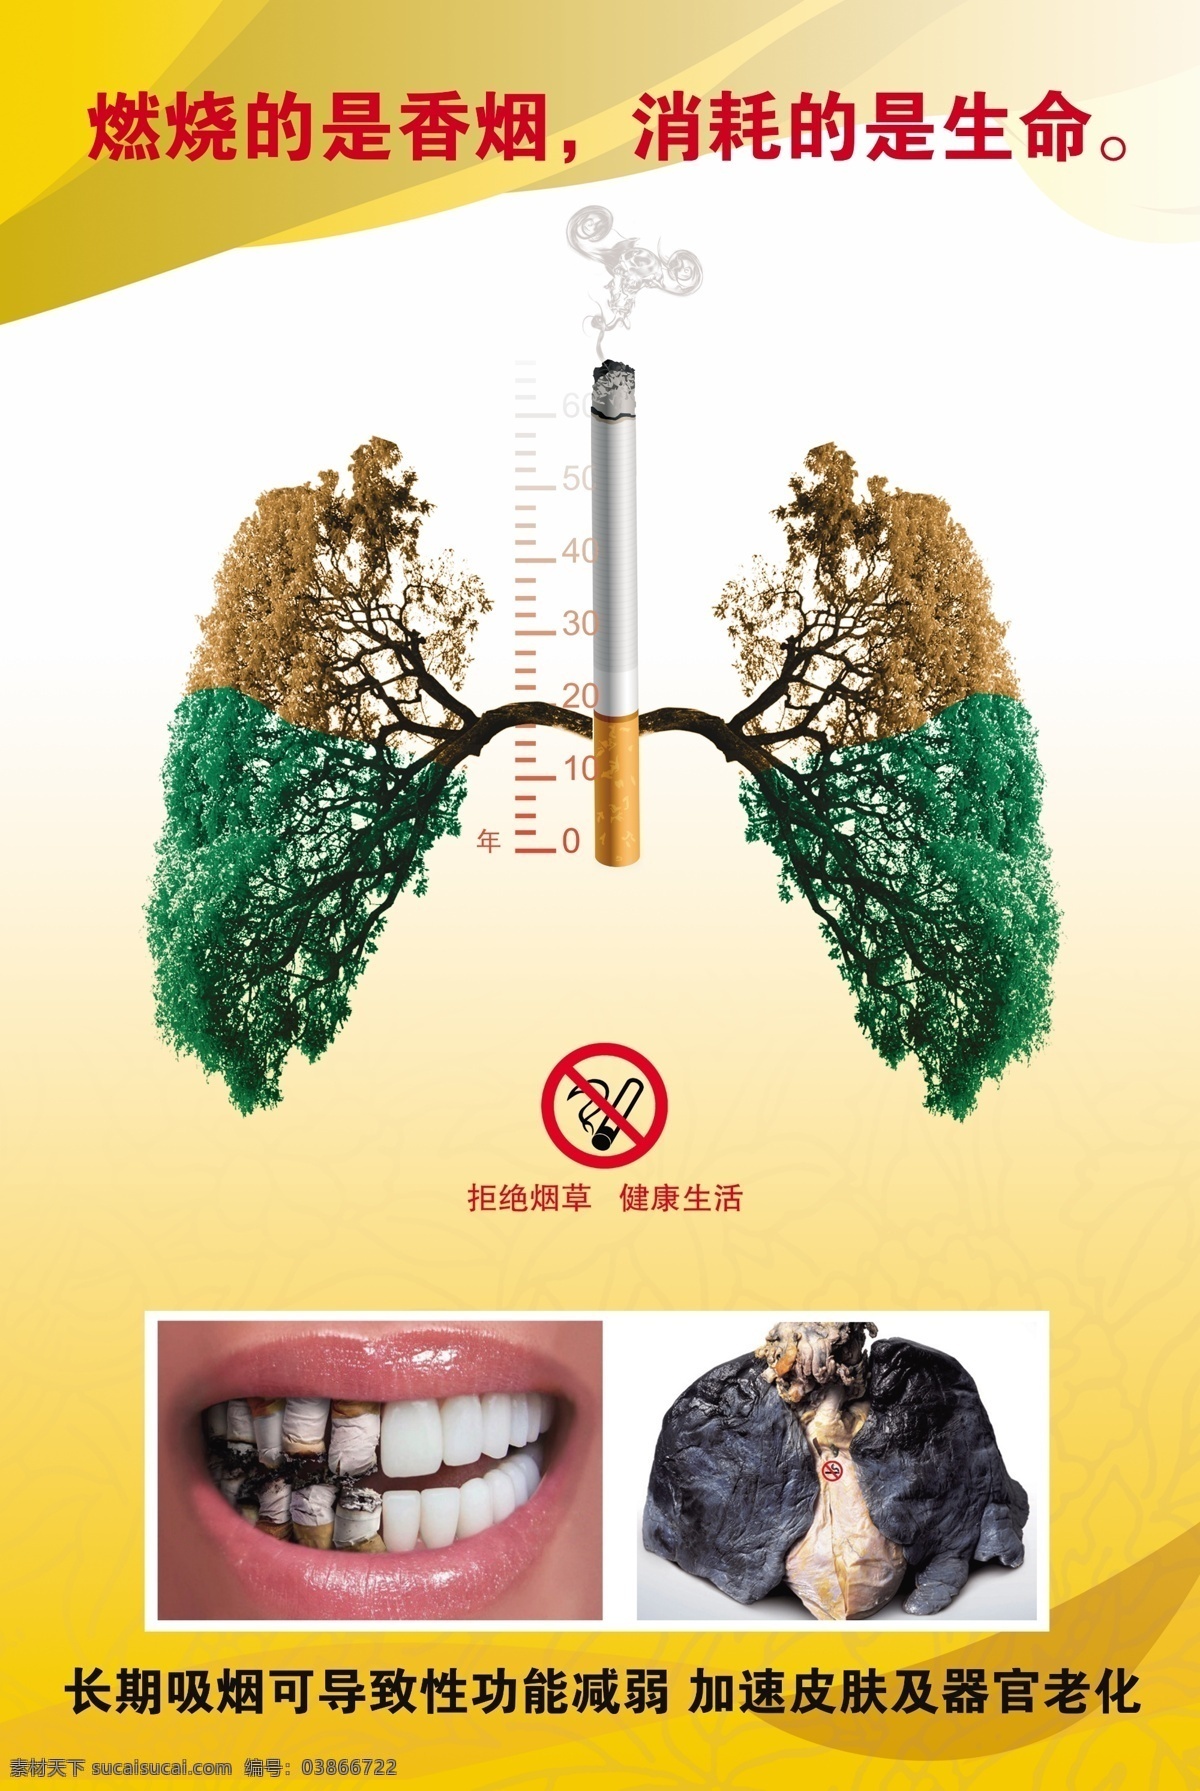 禁止吸烟 展板 燃烧的是香烟 拒绝烟草 健康生活 展板模板